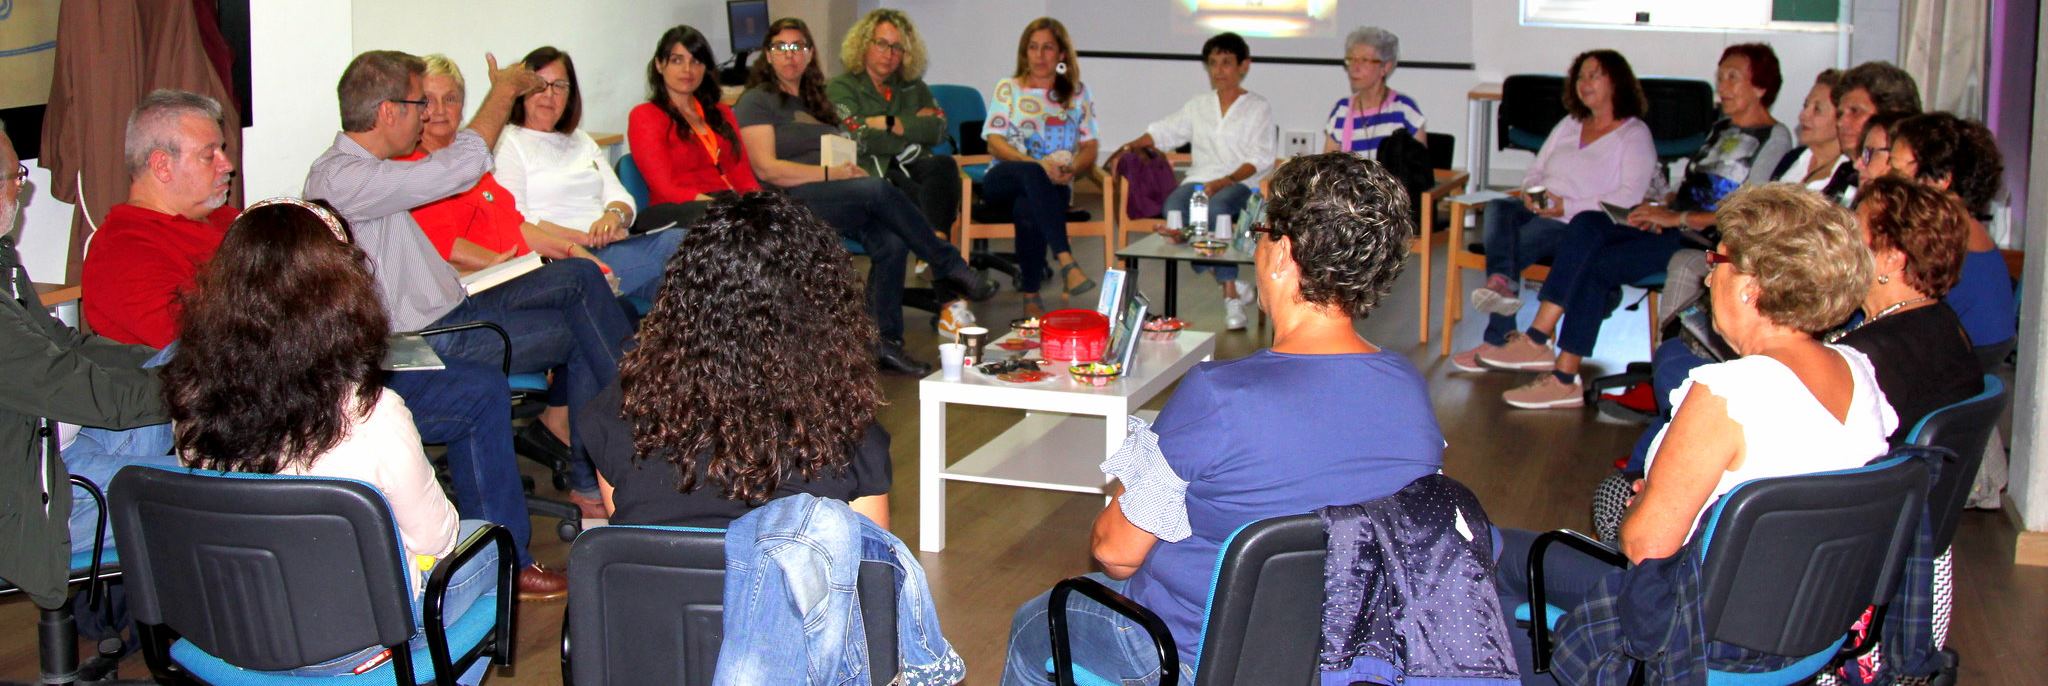 Vista de 22 personas santadas en círculo escuchando al coordinador Oswaldo Guerra en un librofórum de La calma lectora en la sala polivalente del Edificio Central de la Biblioteca Universitaria